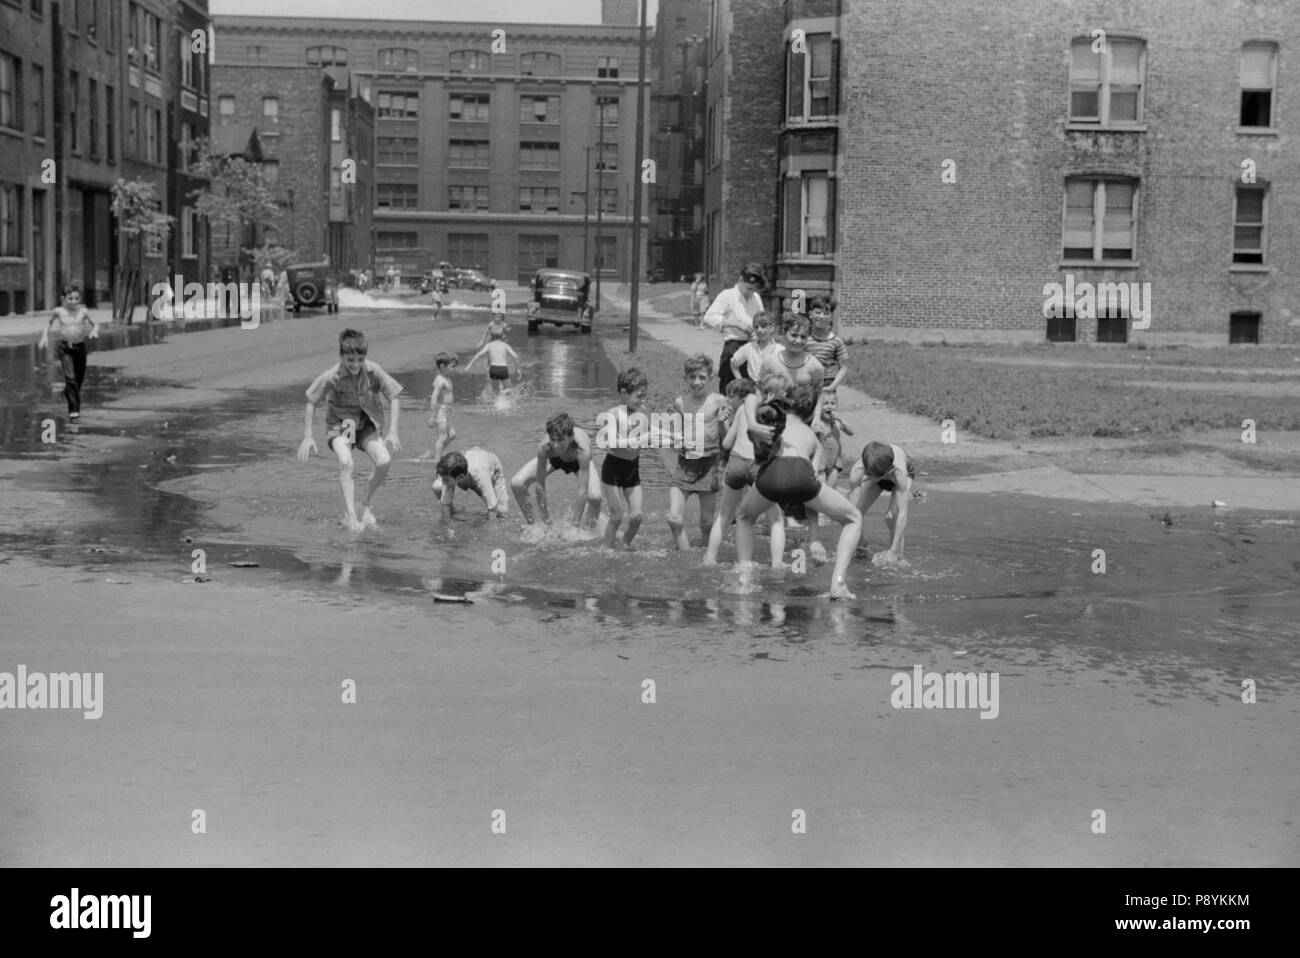 Bambini il raffreddamento in acqua dall'idrante di fuoco, Chicago, Illinois, USA, John Vachon, Farm Security Administration, Luglio 1941 Foto Stock